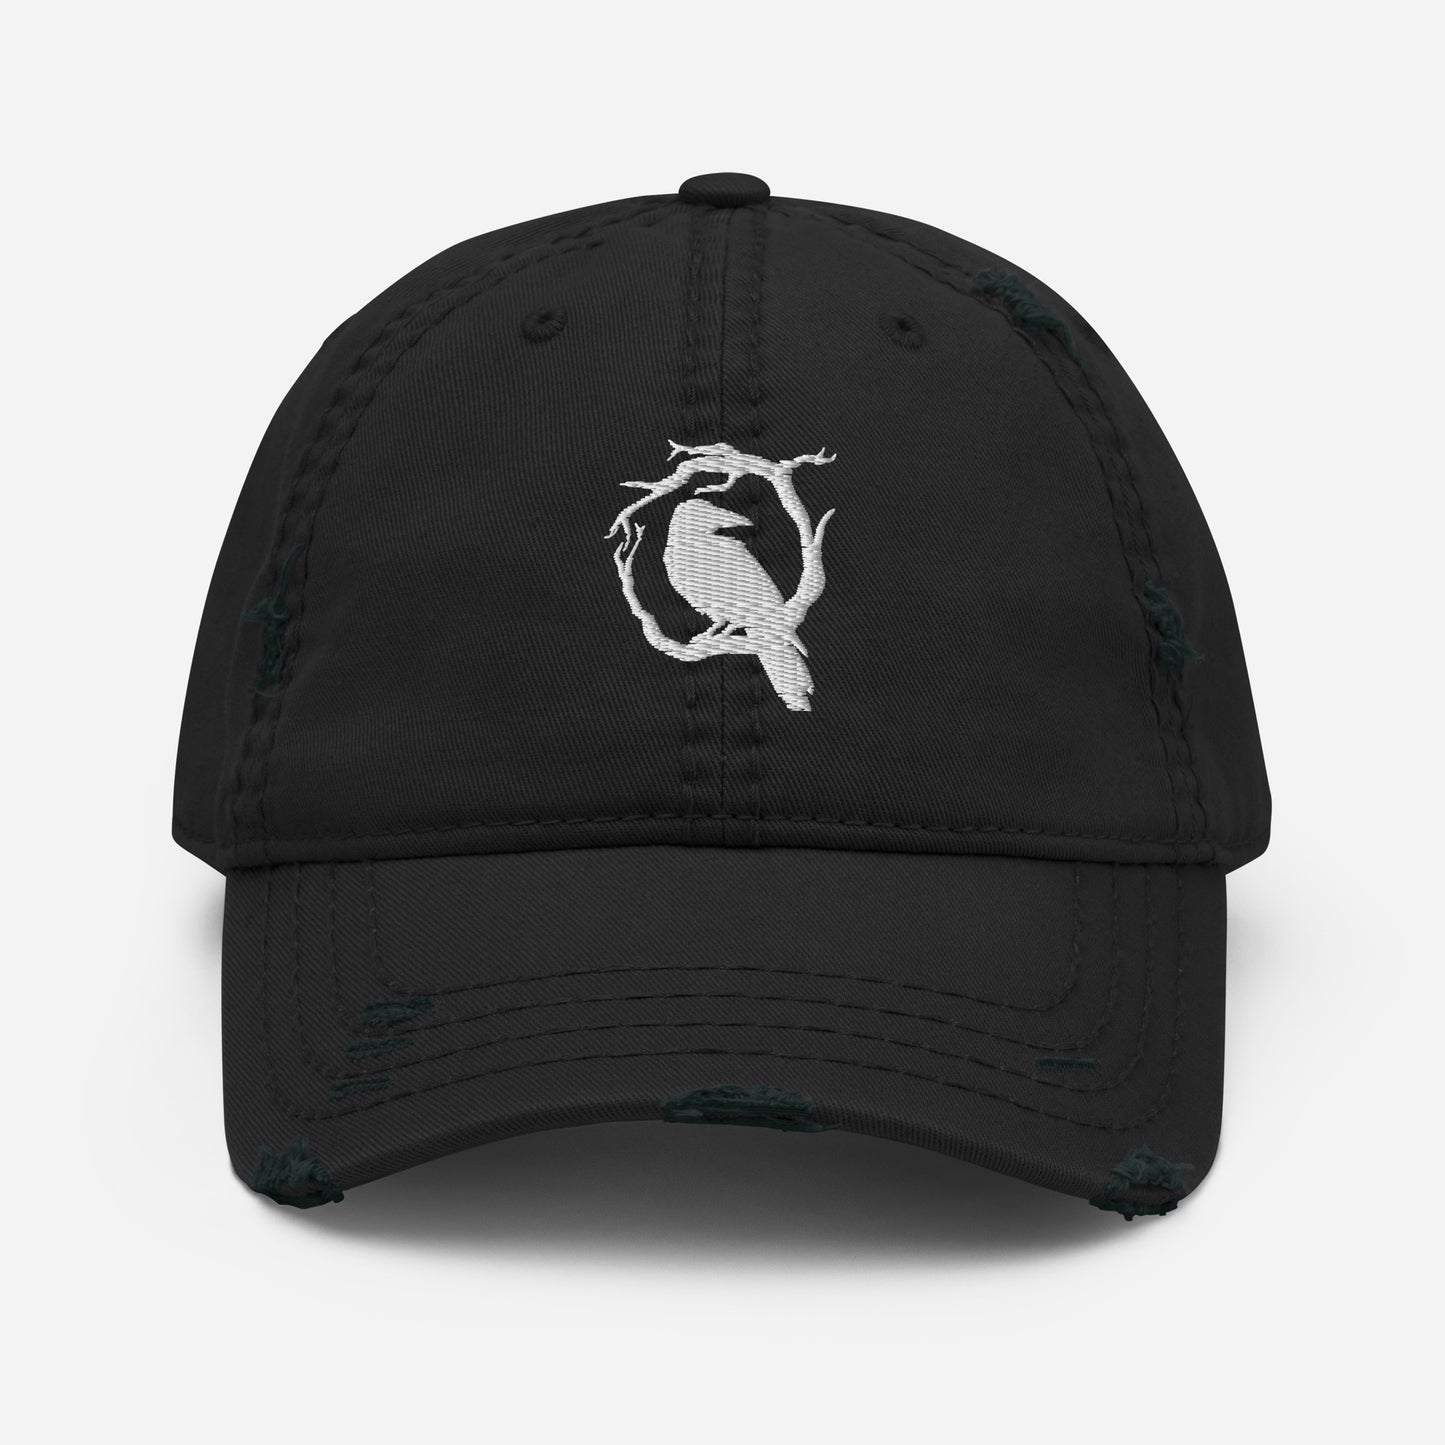 Q&C Distressed Hat